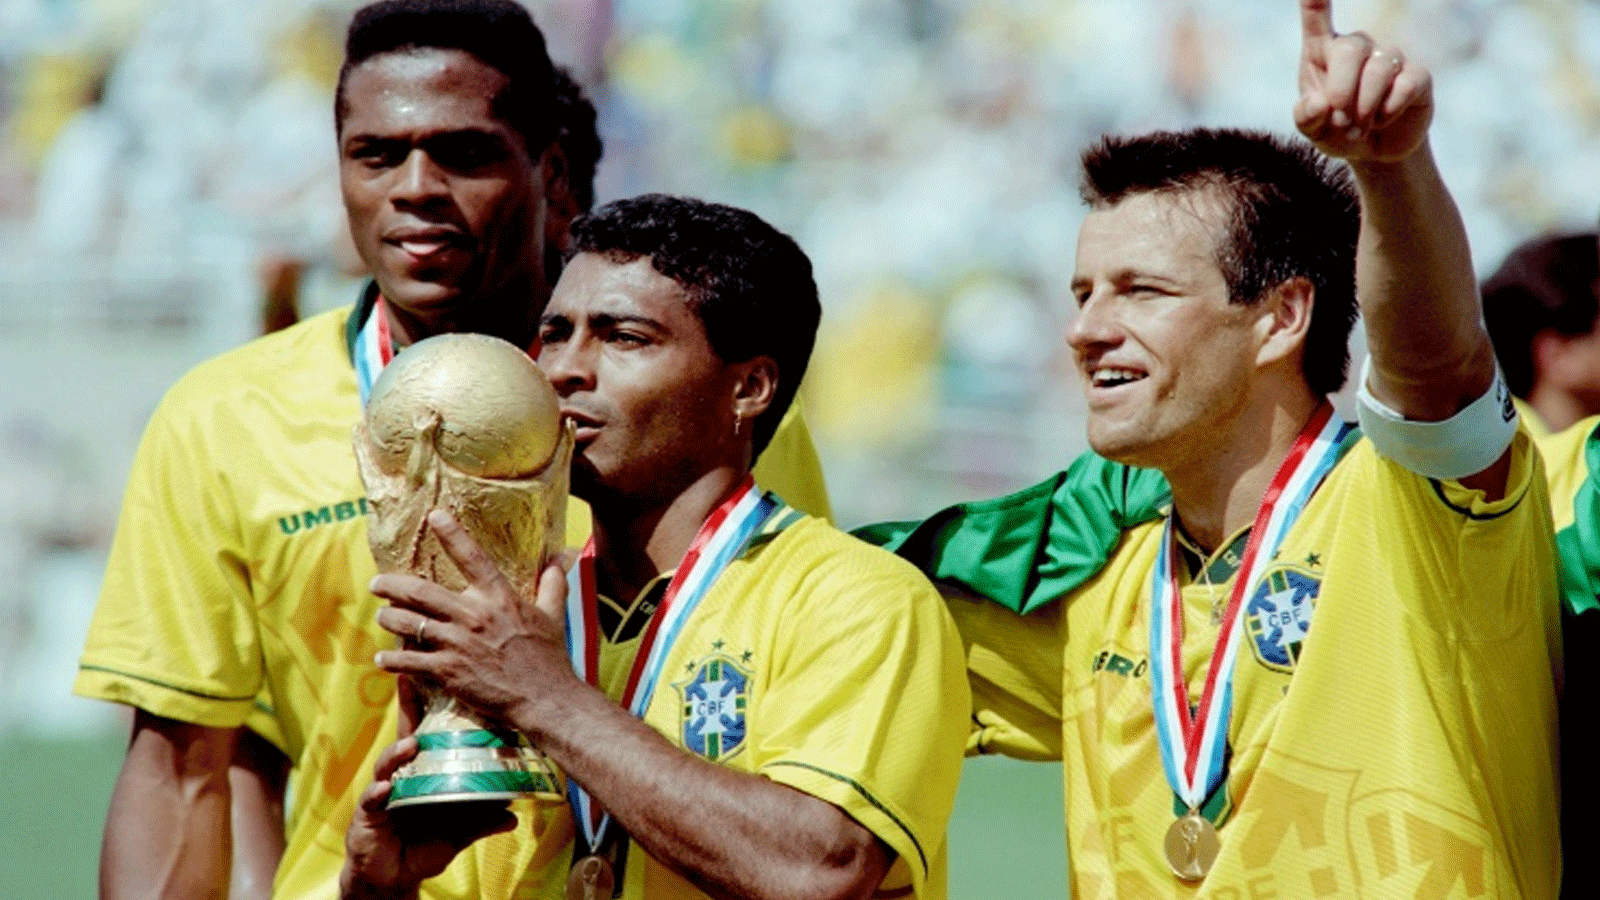 المهاجم البرازيلي روماريو يقبل كأس العالم 1994 بعد الفوز على ايطاليا في النهائي